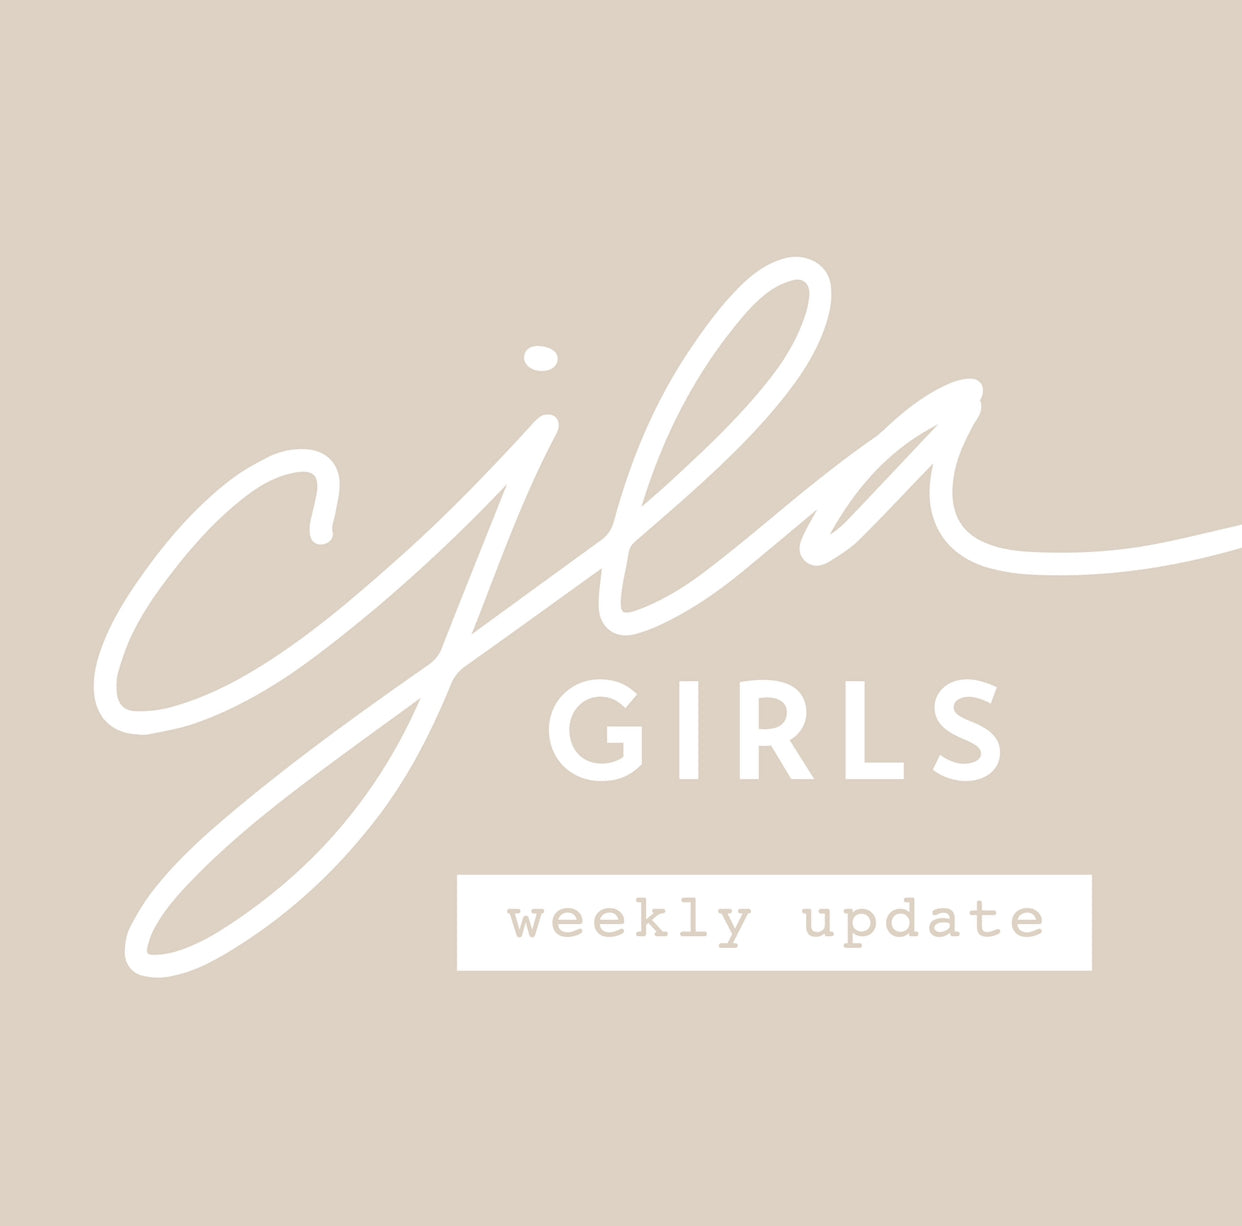 CJLA Girls Weekly Update: September 20-26